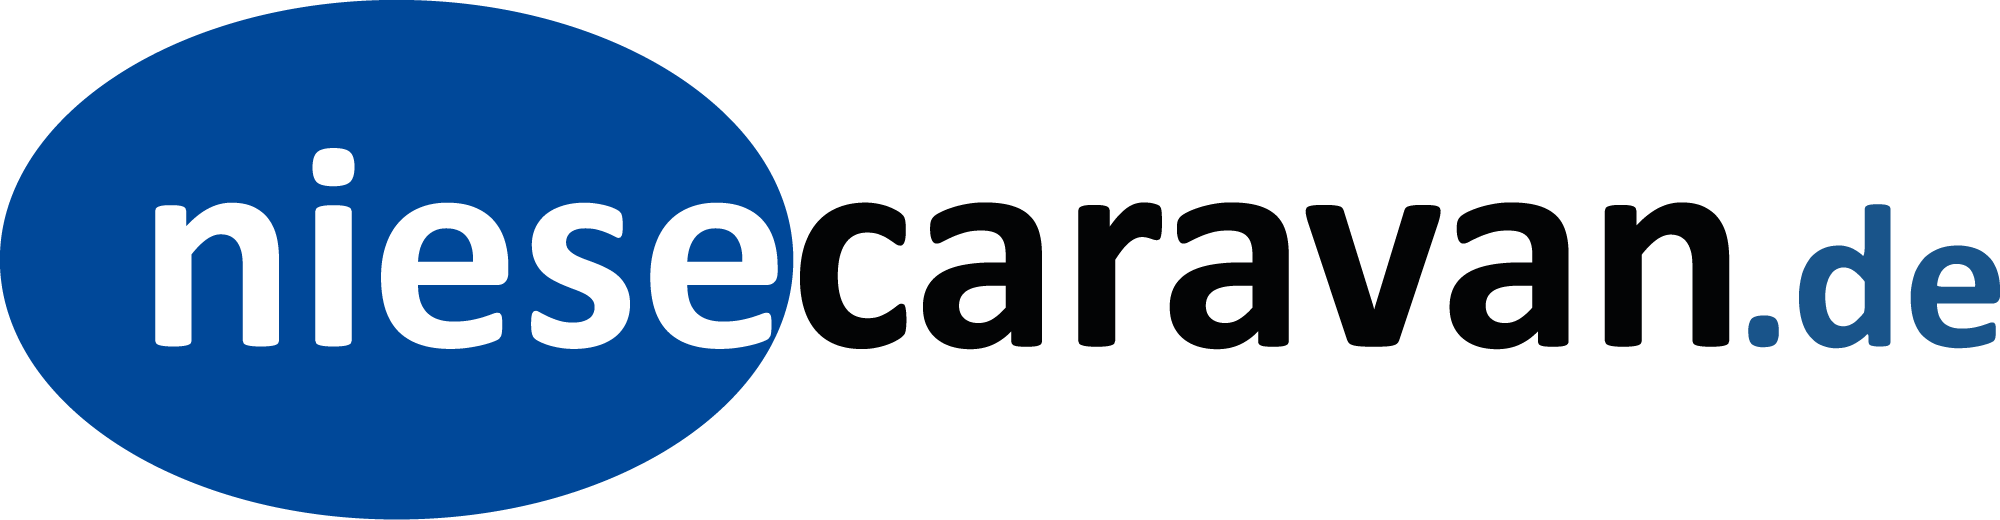 NIESE CARAVAN GmbH & Co. KG logo